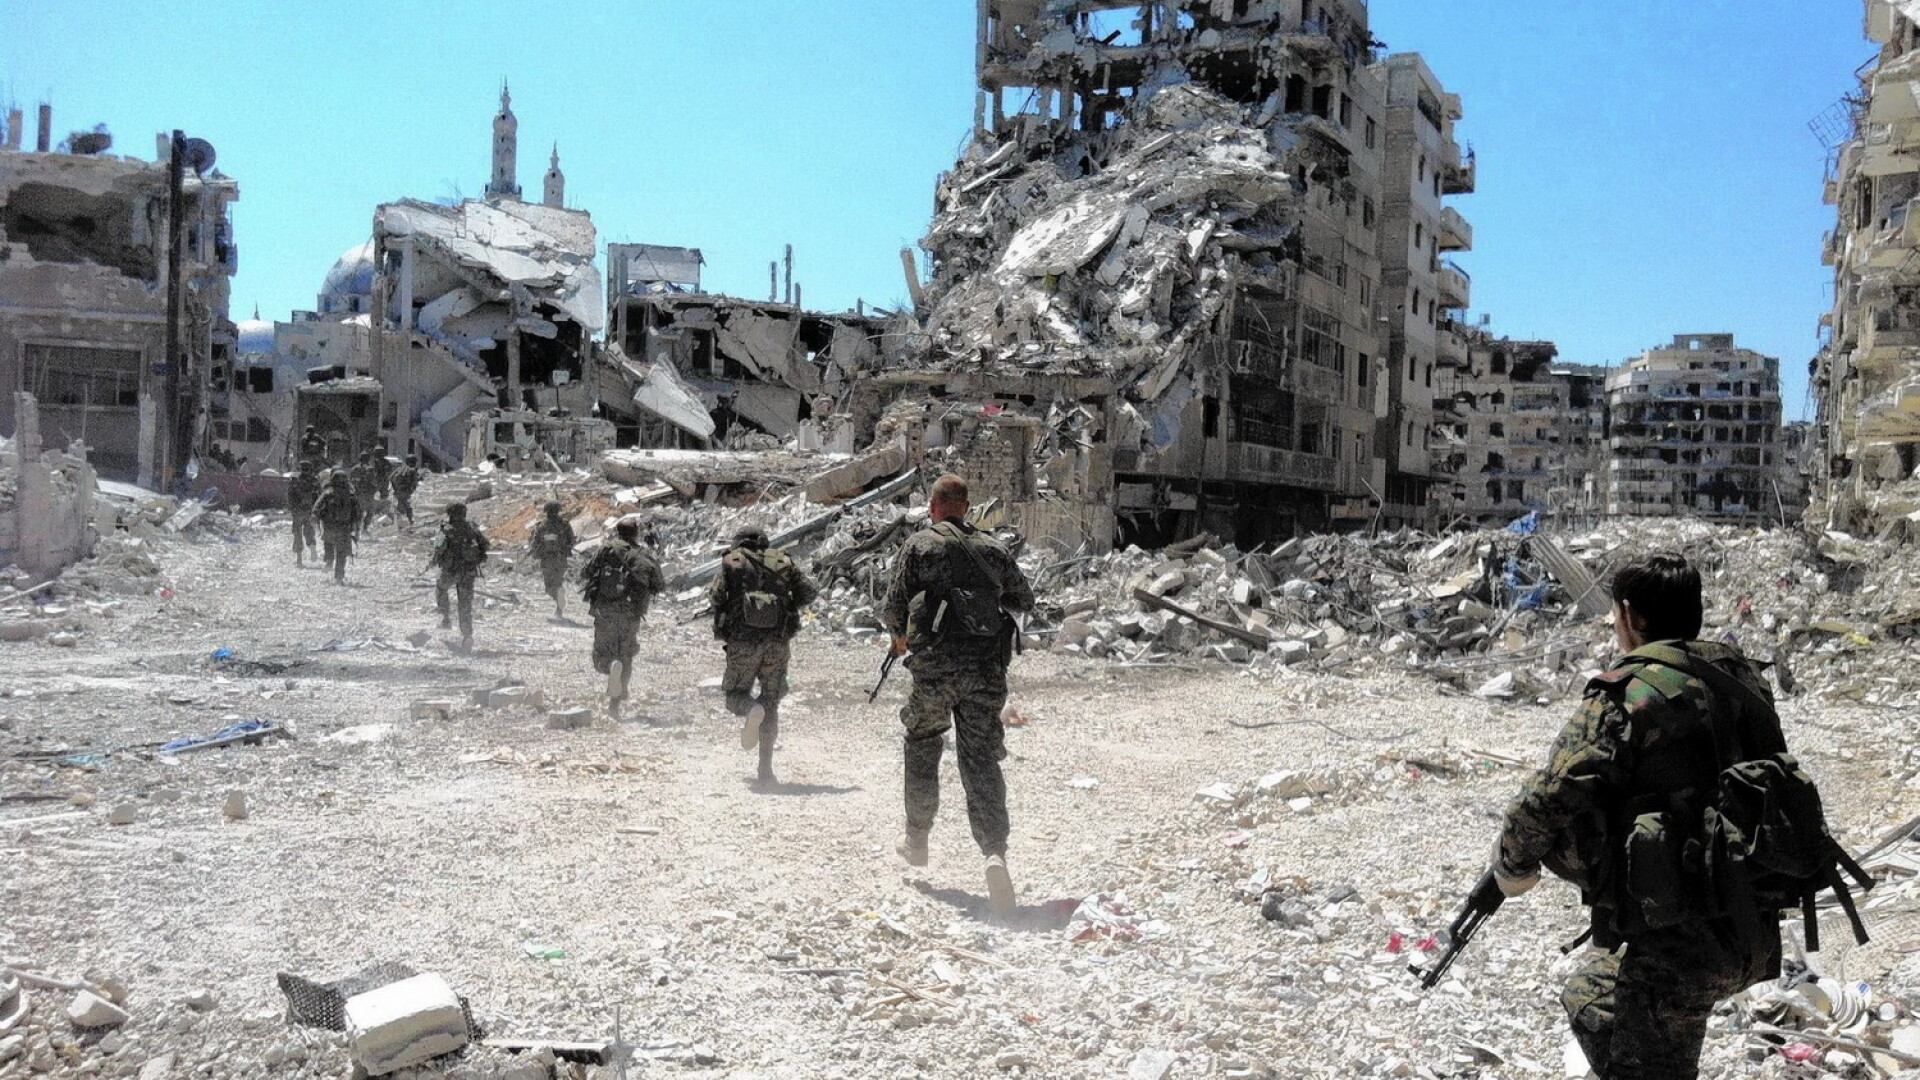 razboi civil Siria